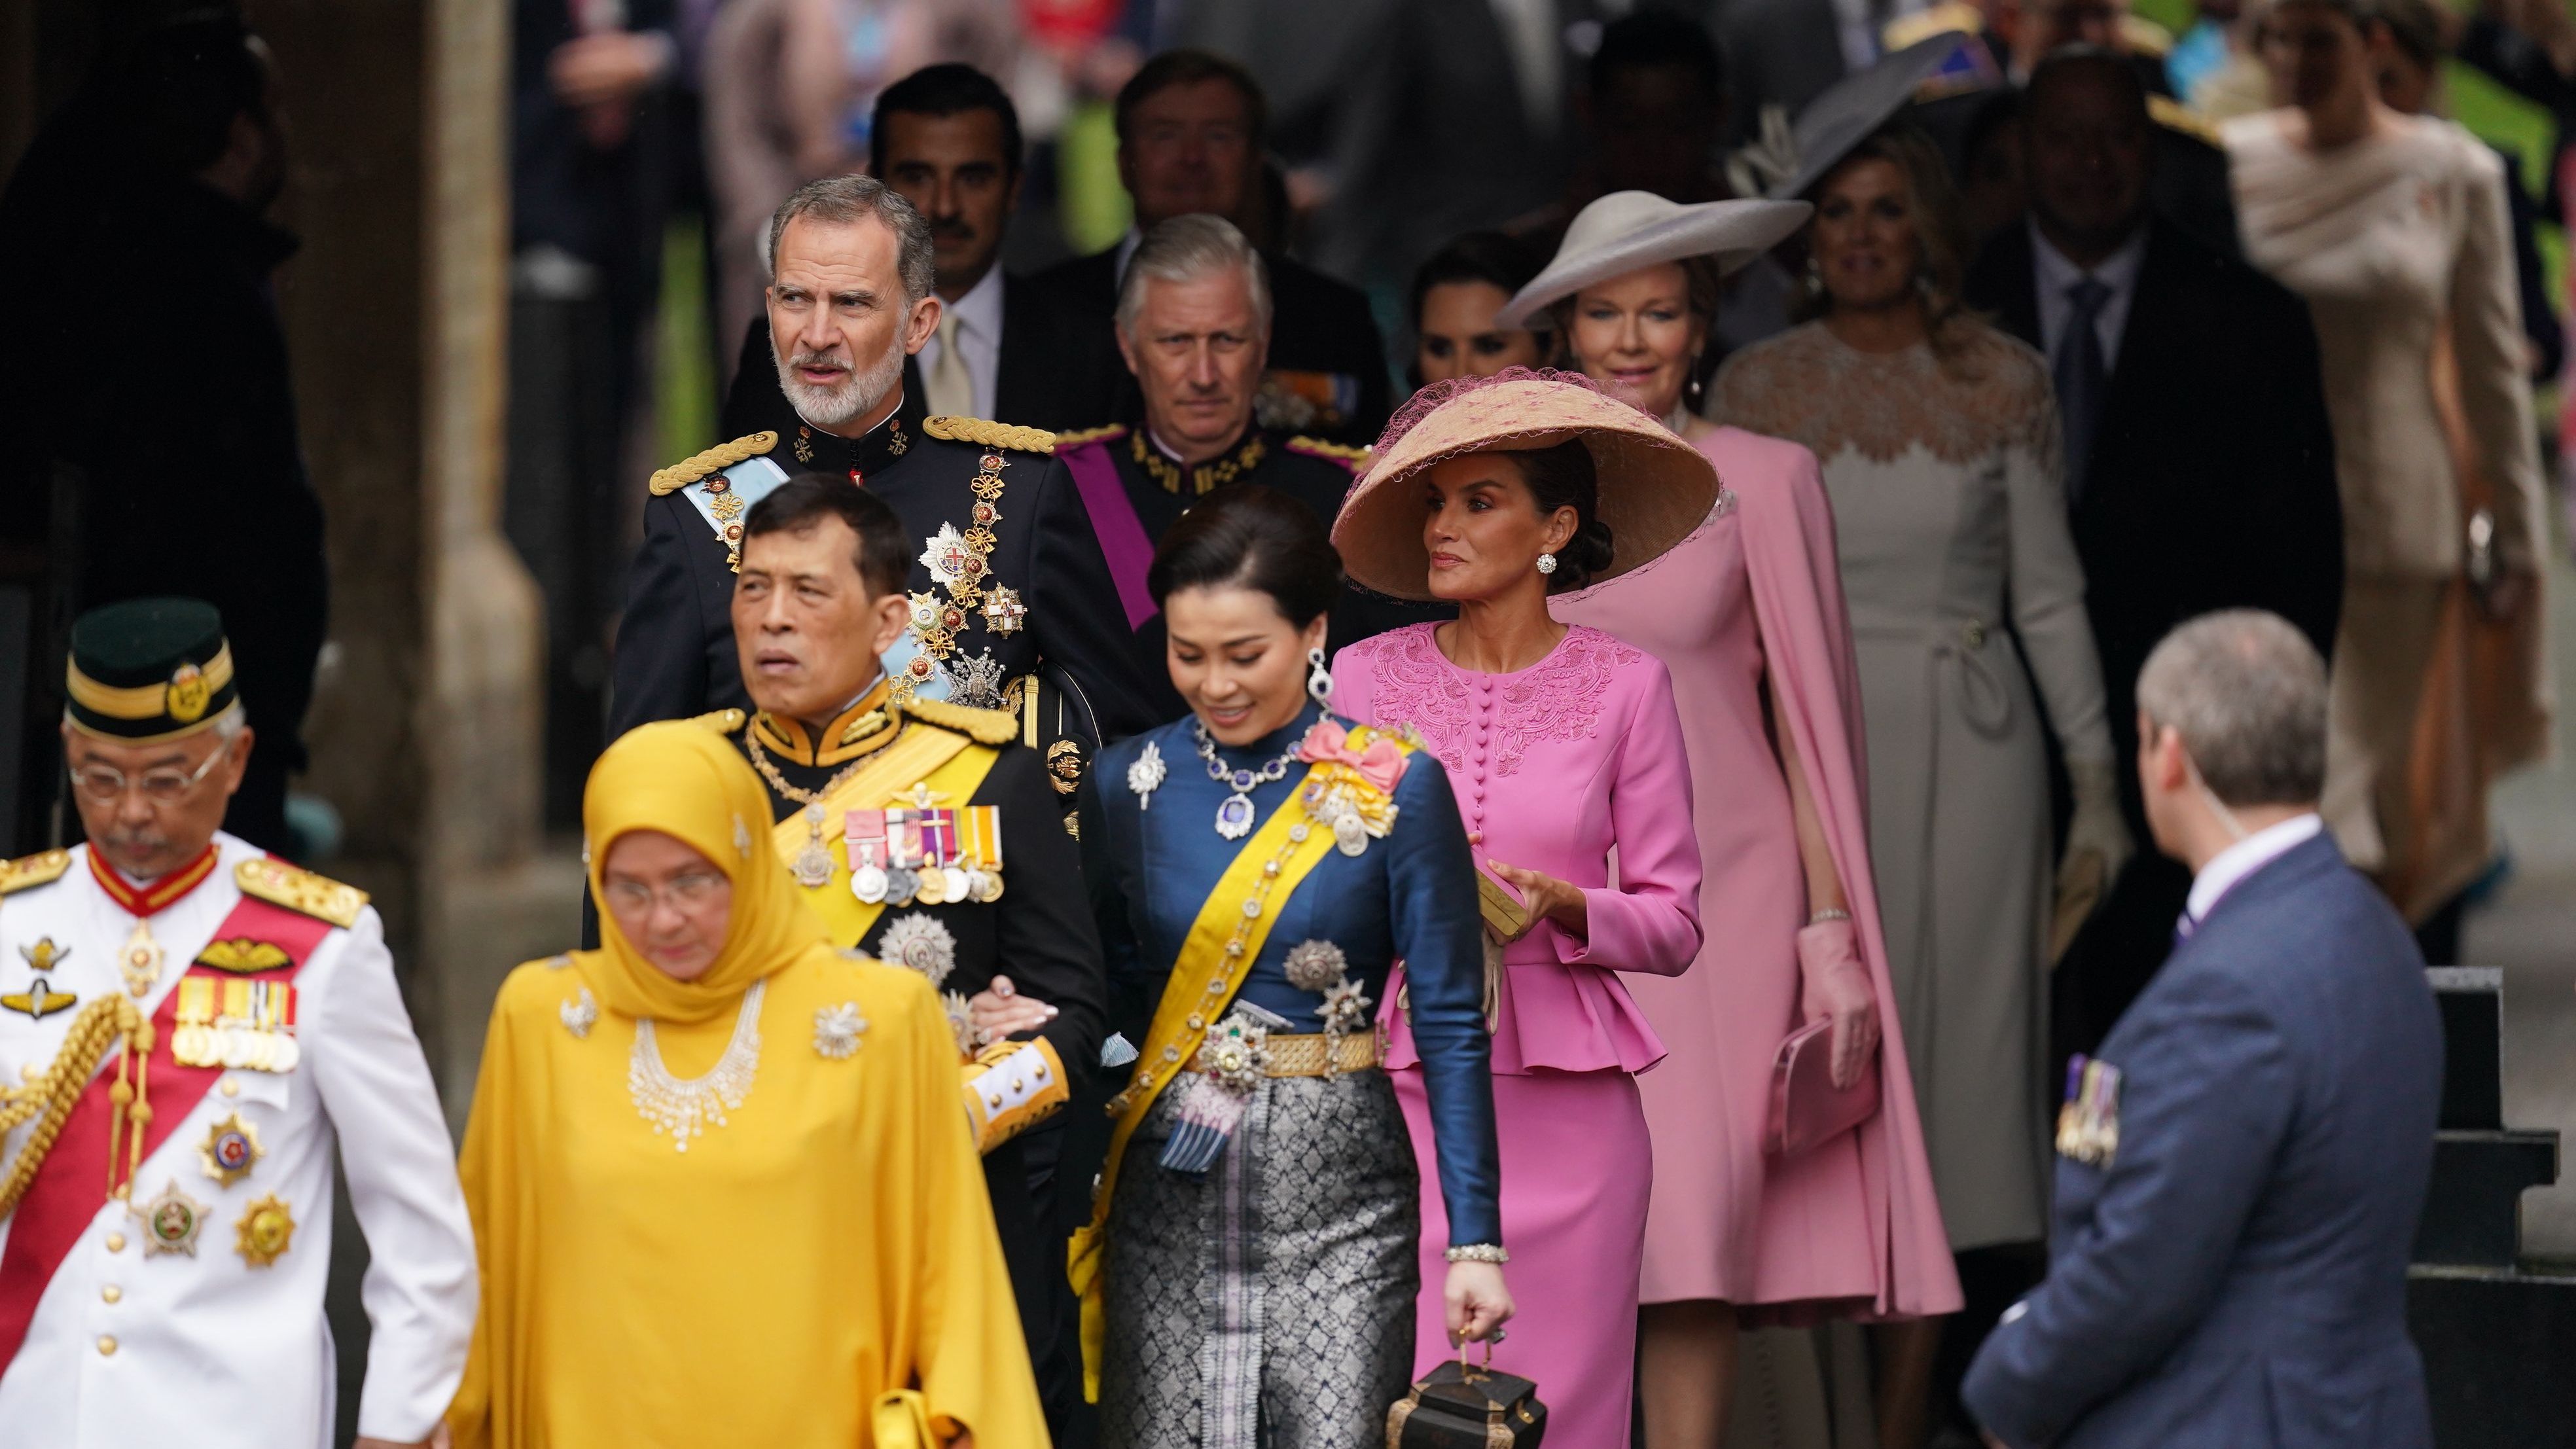 Der Dresscode der Gäste ist verhältnismäßig leger für ein solches Jahrhundert-Event: Felipe VI. und Königin Letizia von Spanien (Mitte) kommen vor der Krönungszeremonie von König Charles III. und Königin Camilla in der Westminster Abbey im Zentrum Londons an.